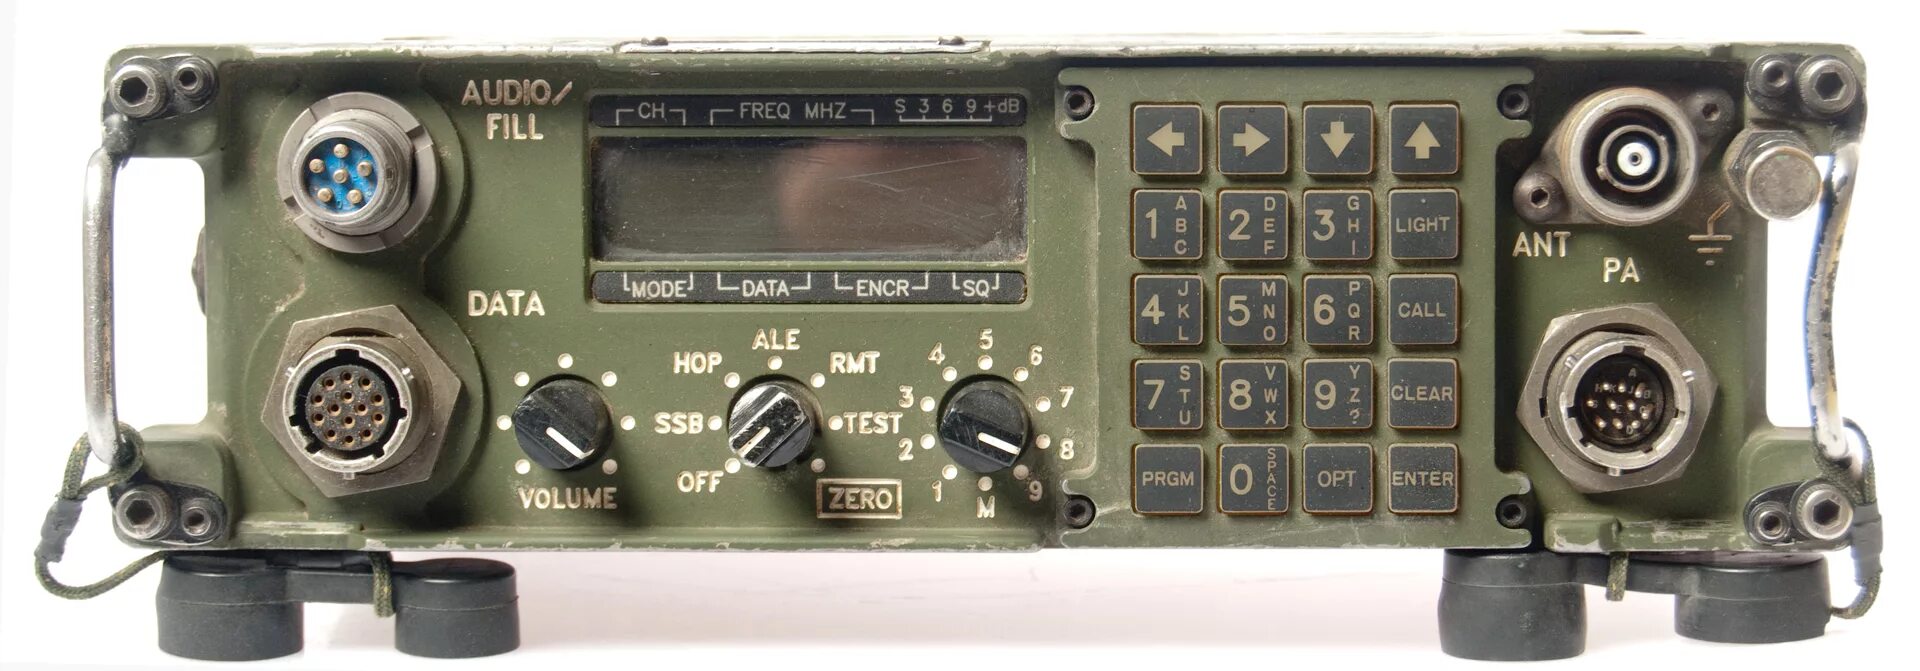 Укв стационарная. Тадиран радиостанция PRC 6020. Радиостанция an/PRC-138. Радиостанция PRC-525. Радиостанция HF SSB SG-2000.